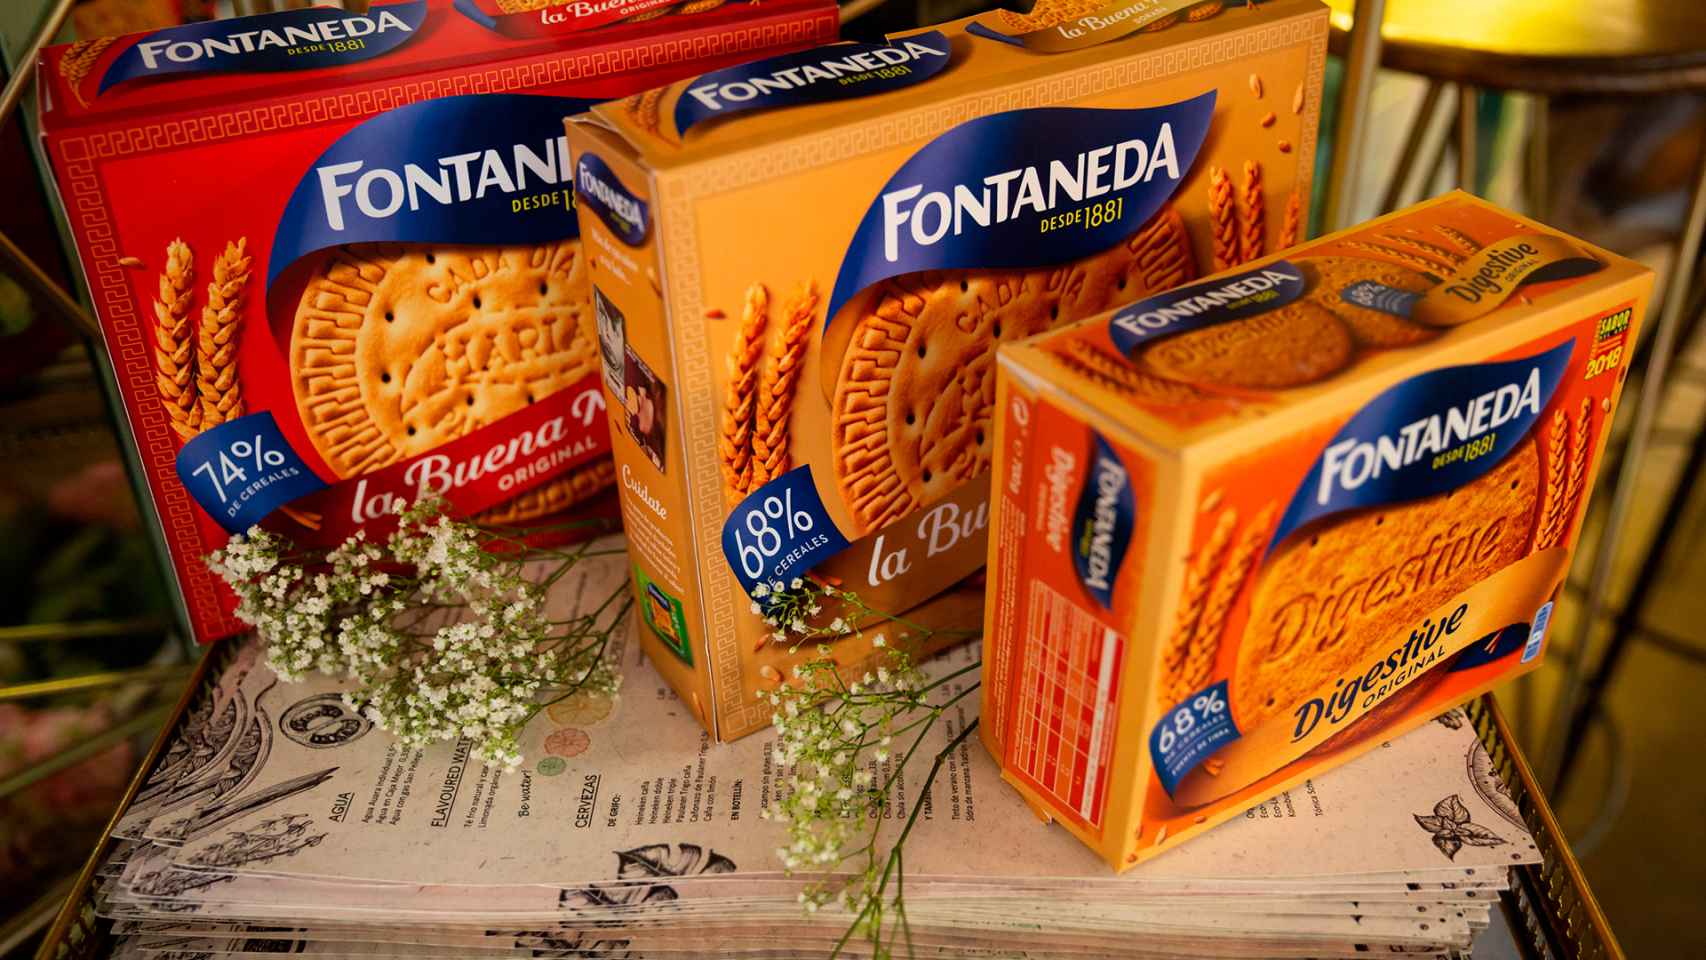 El nuevo packaging de Fontaneda.